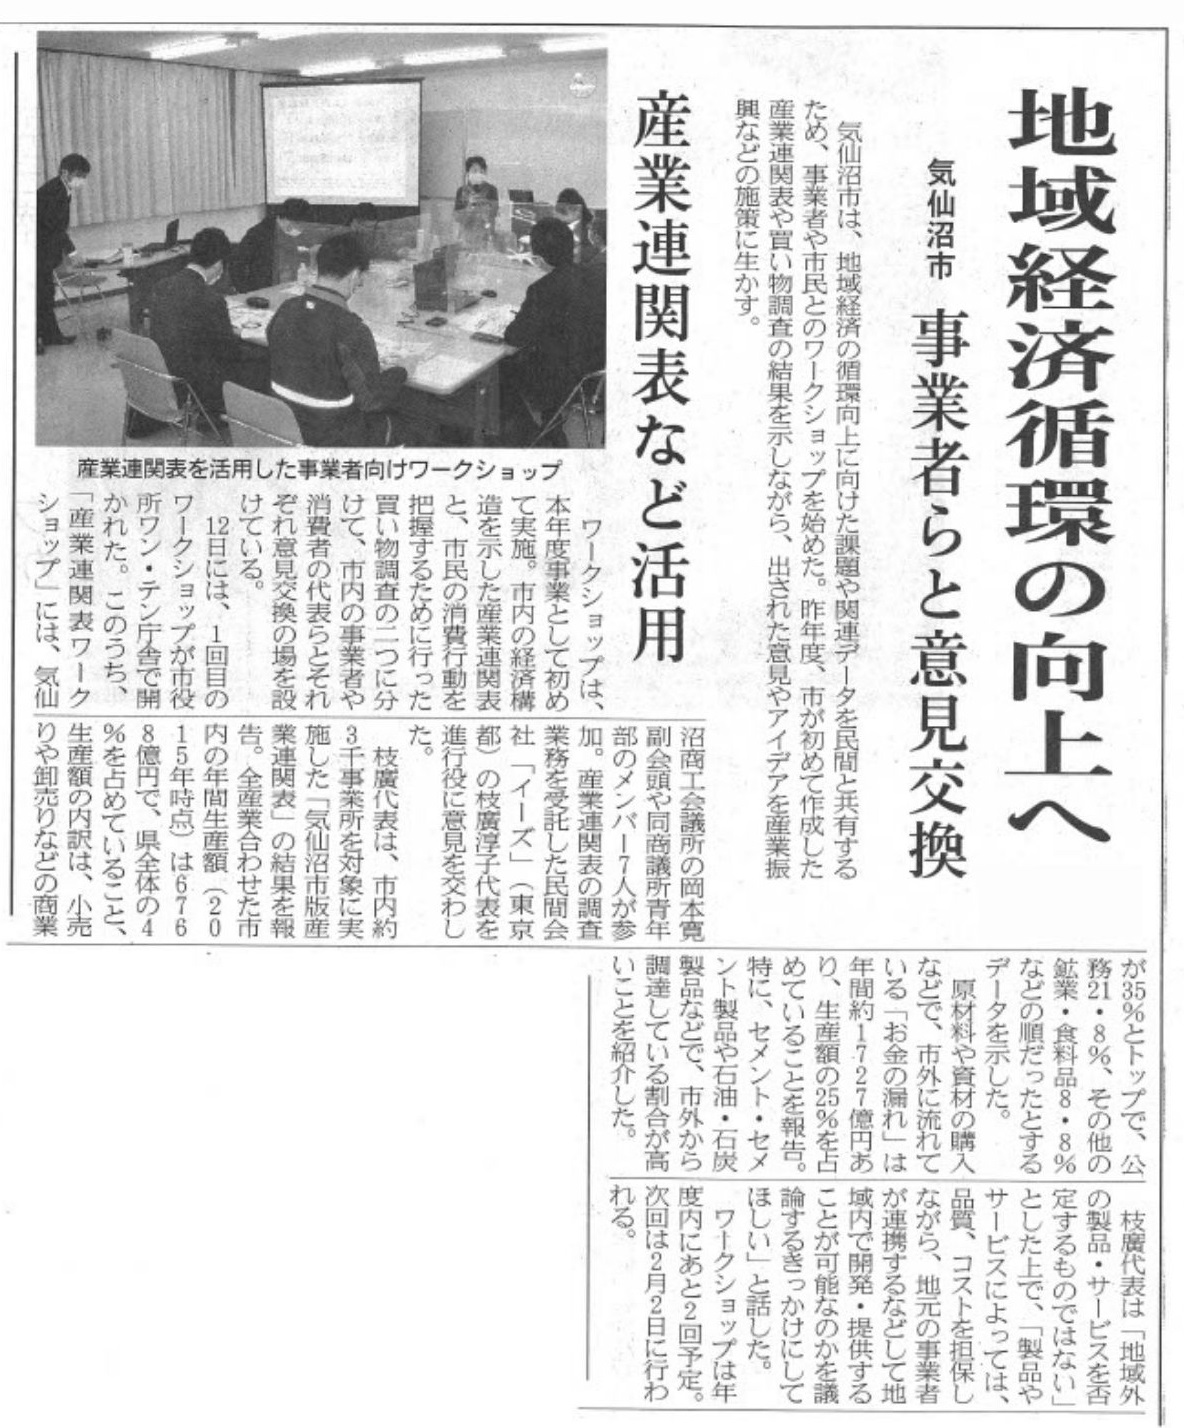 https://www.es-inc.jp/news/archives/img/220116_WS.jpg